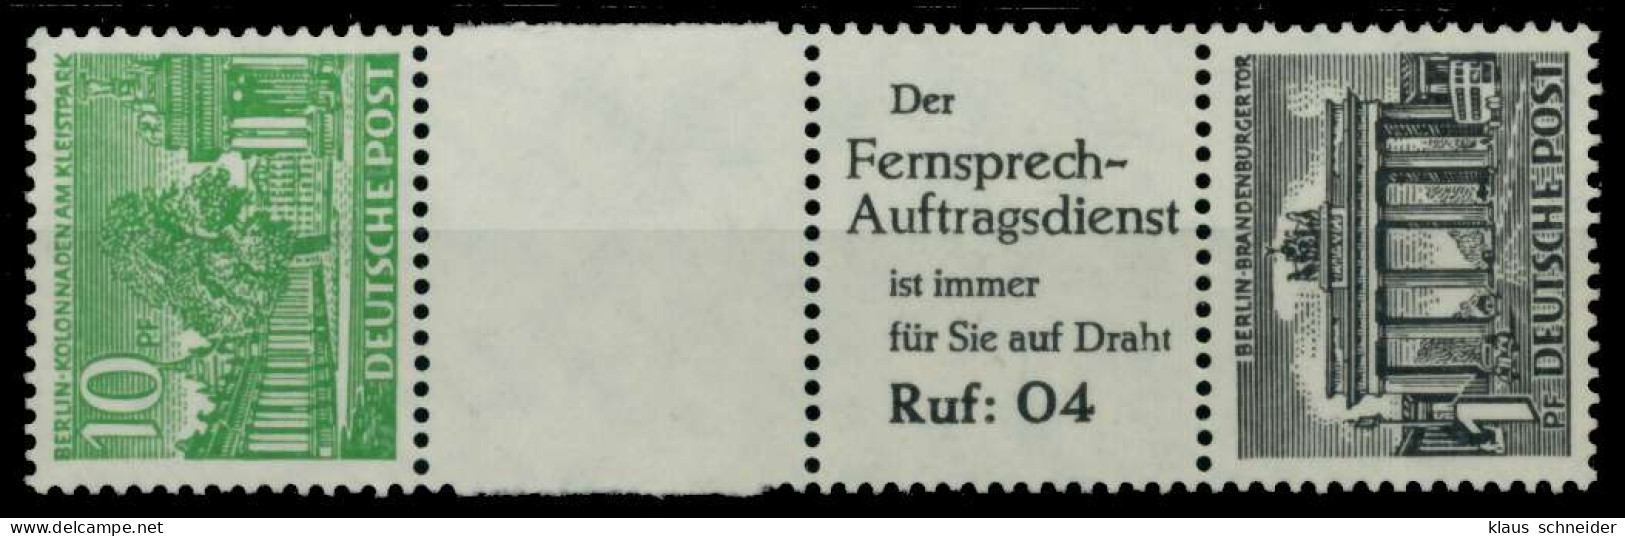 BERLIN ZUSAMMENDRUCK Nr SZ6 Postfrisch 3ER STR X6BE5EE - Zusammendrucke